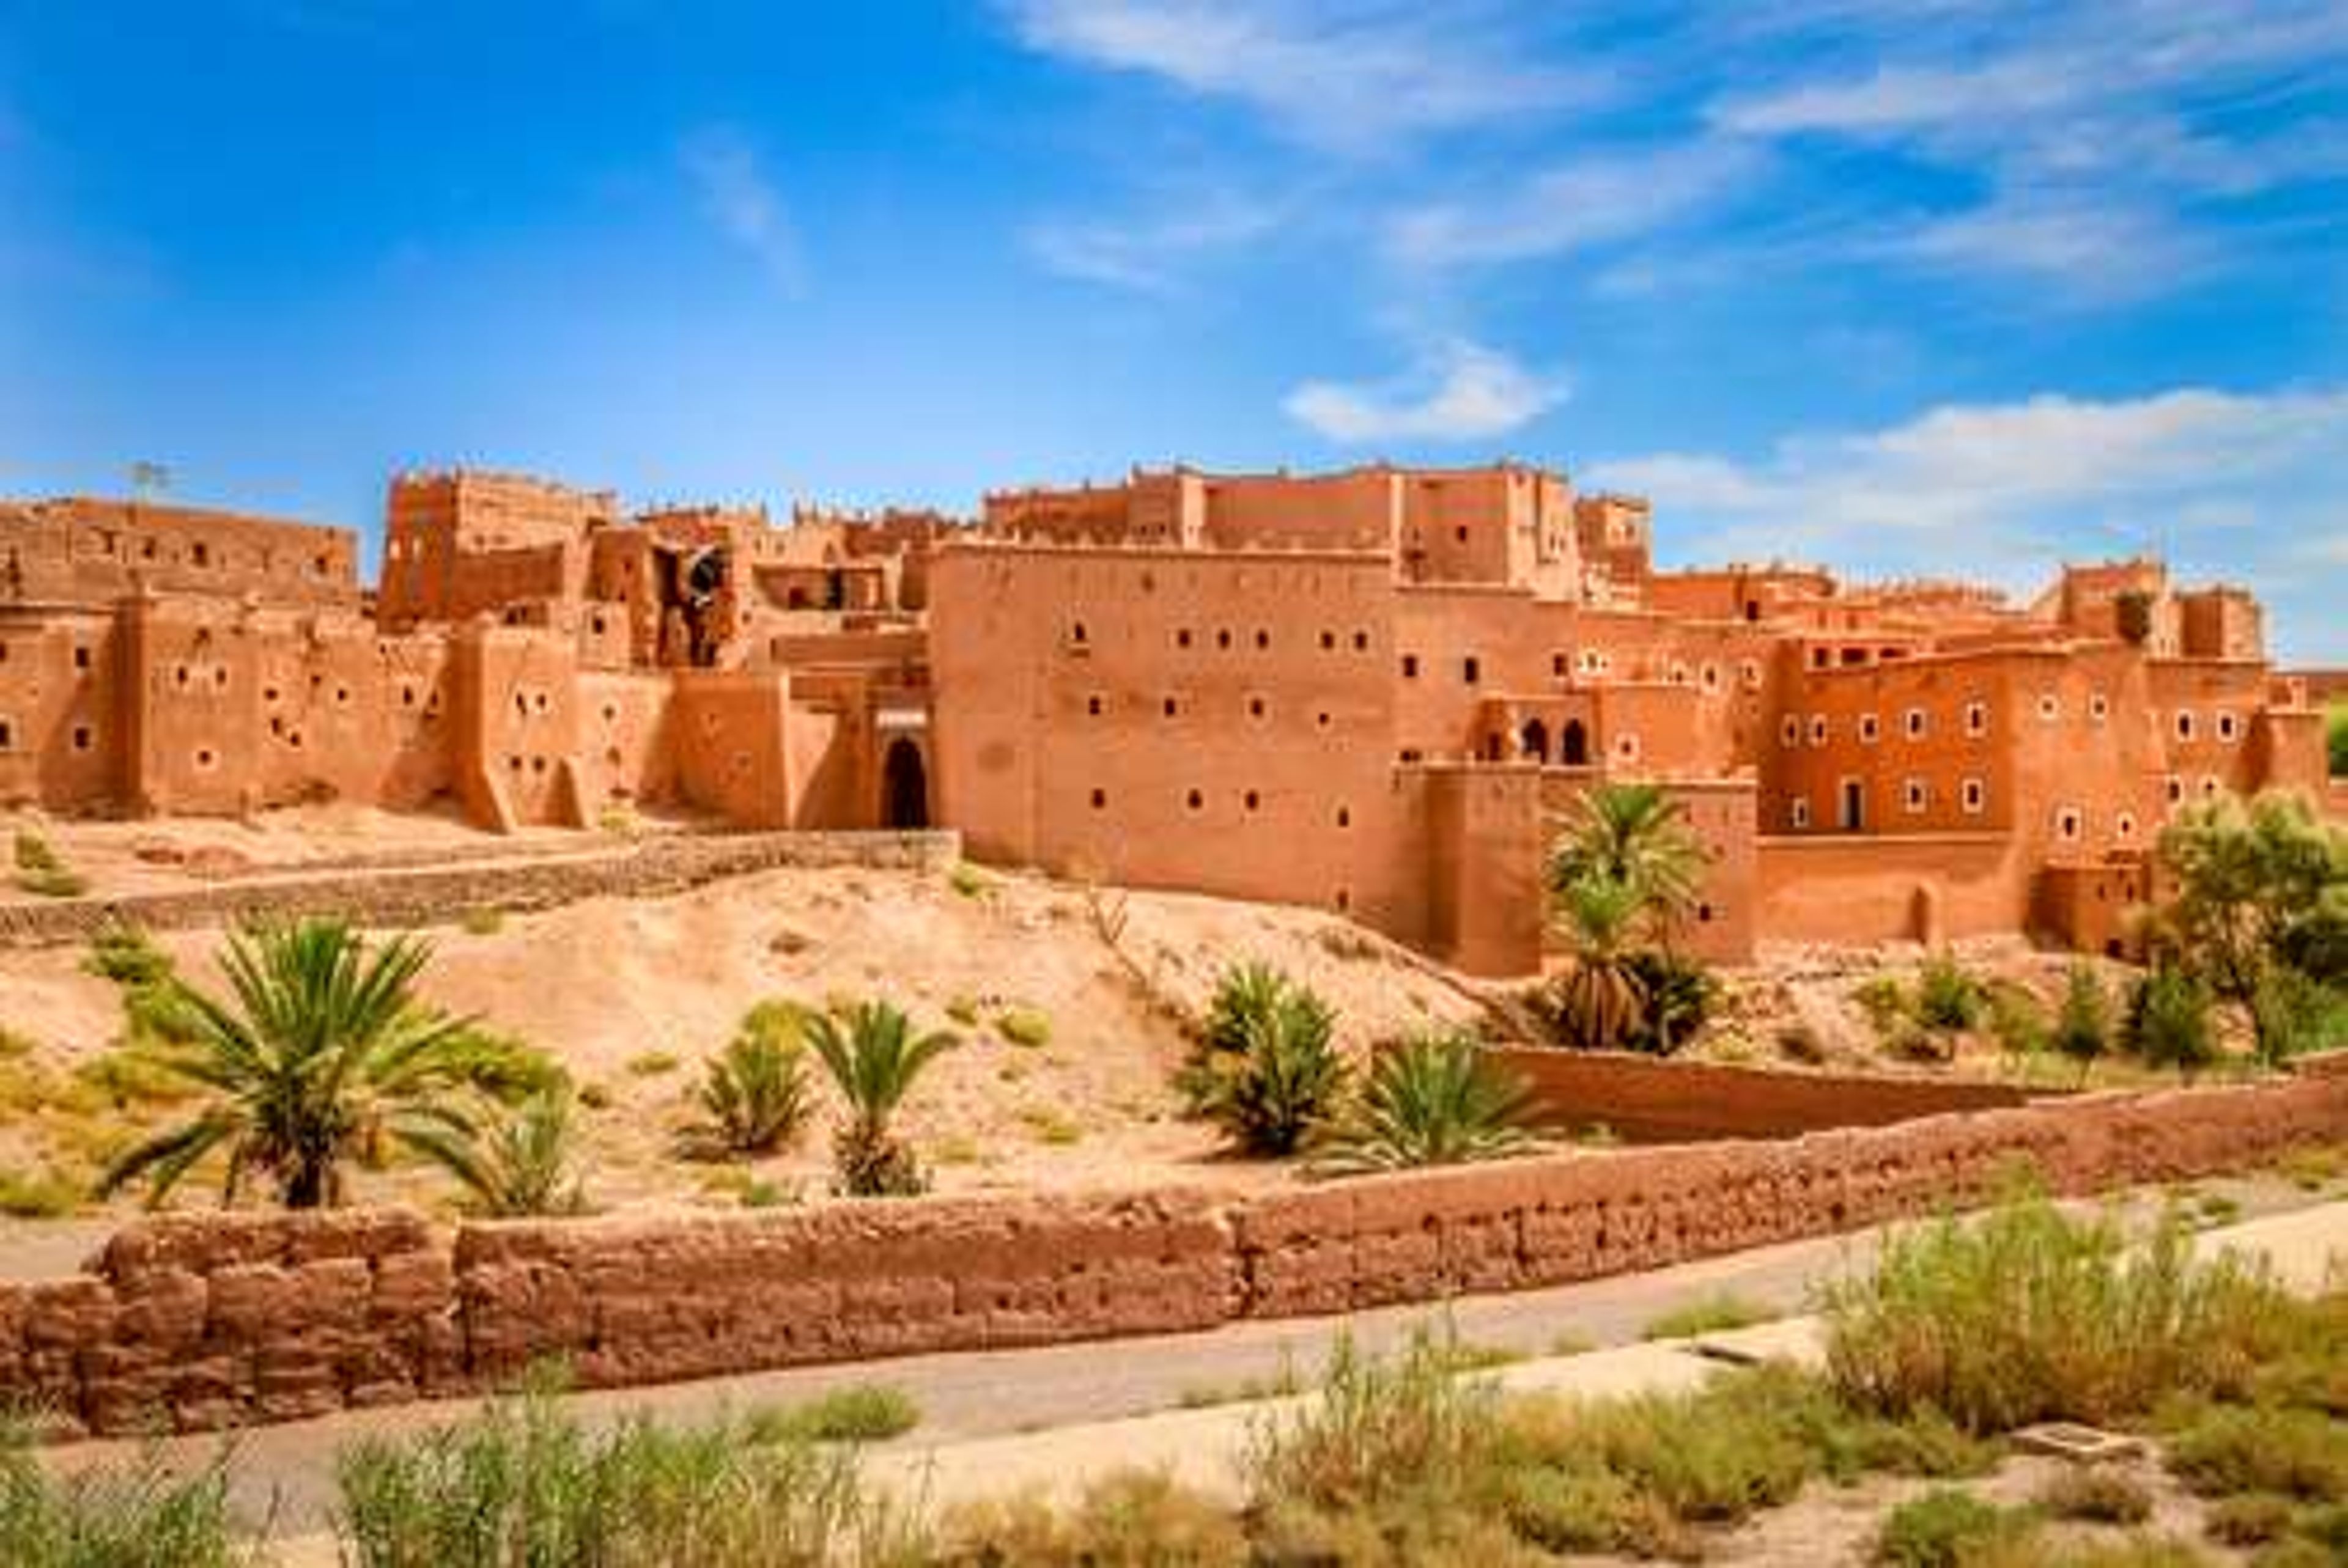 Marokko Kasbah Ait Ben Haddou near Ouarzazate1